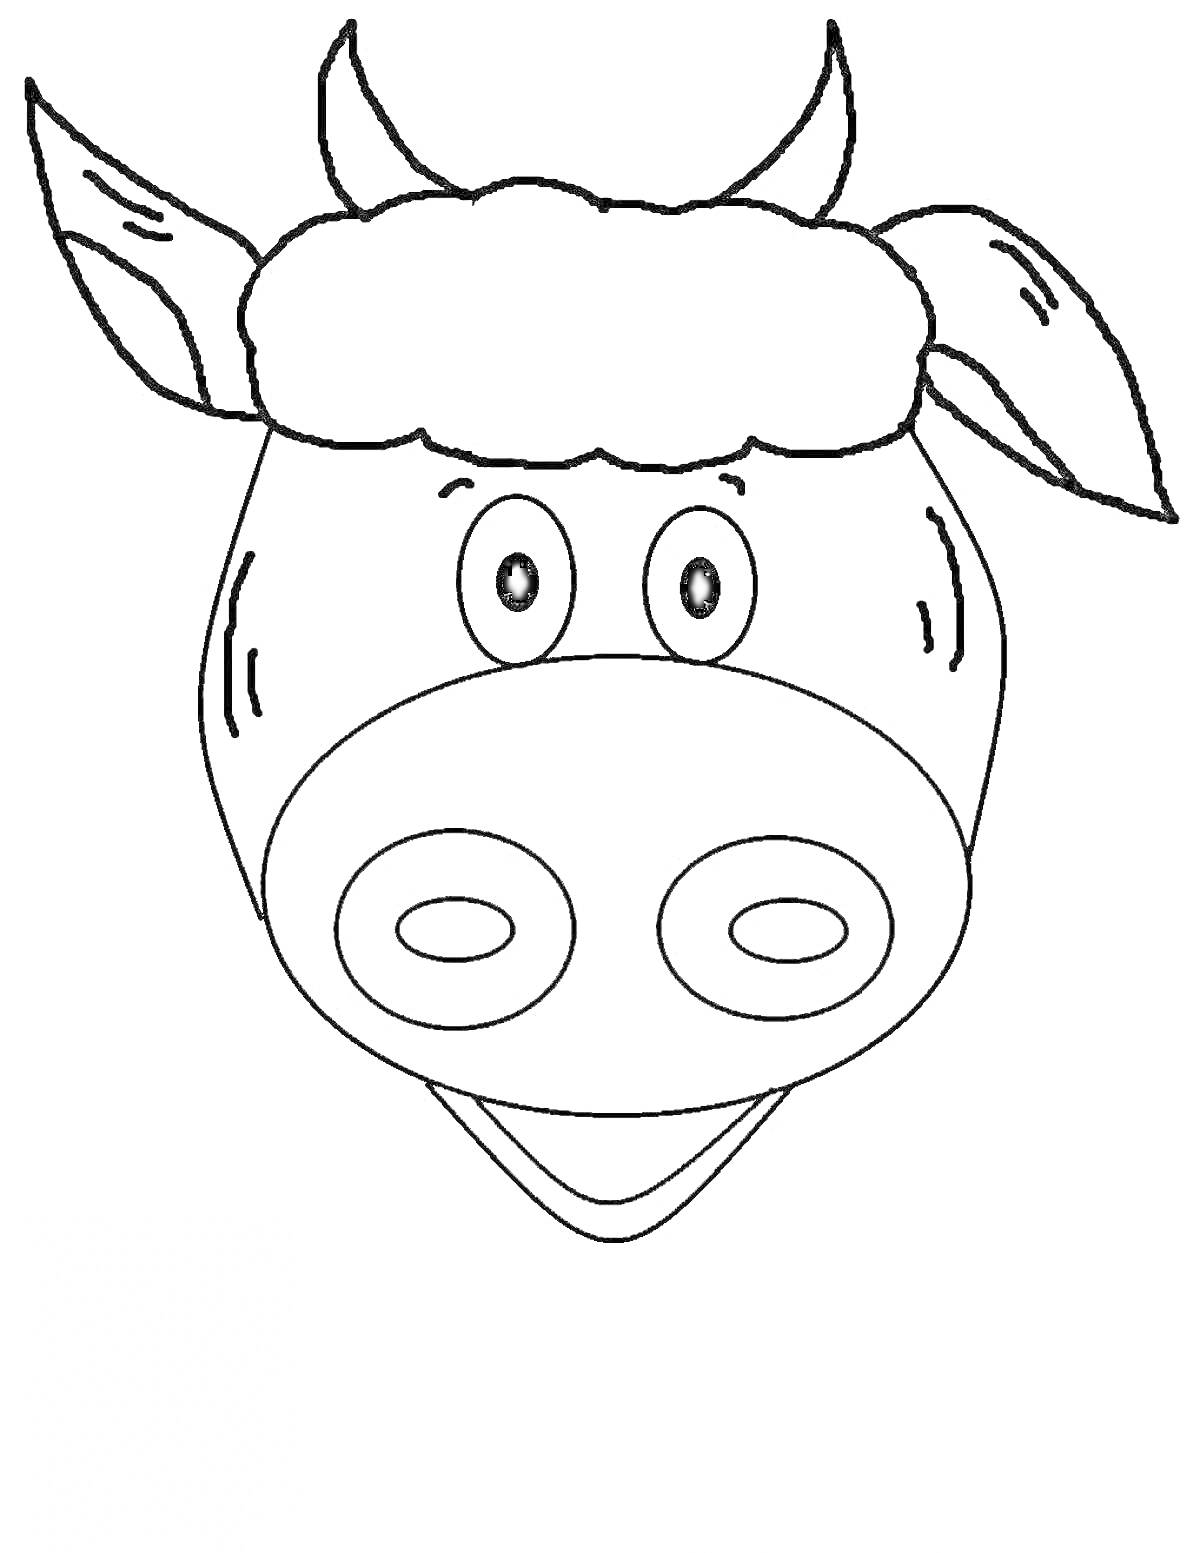 Раскраска Раскраска головы коровы с ушами, рогами и глазами